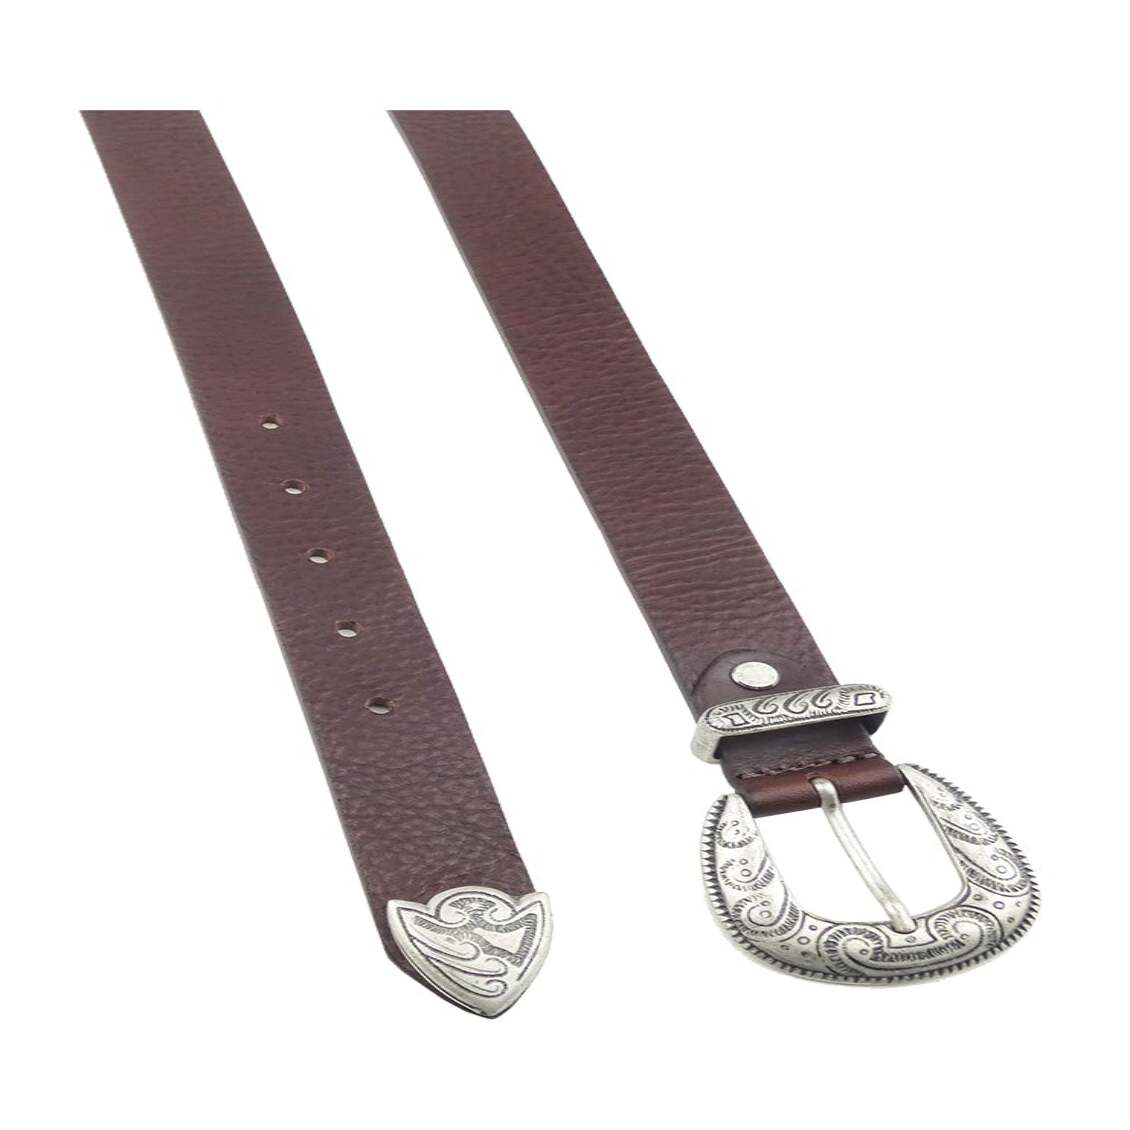 Cinturón de piel de 3cm con hebilla y trabilla de zamak plateado - Picasso